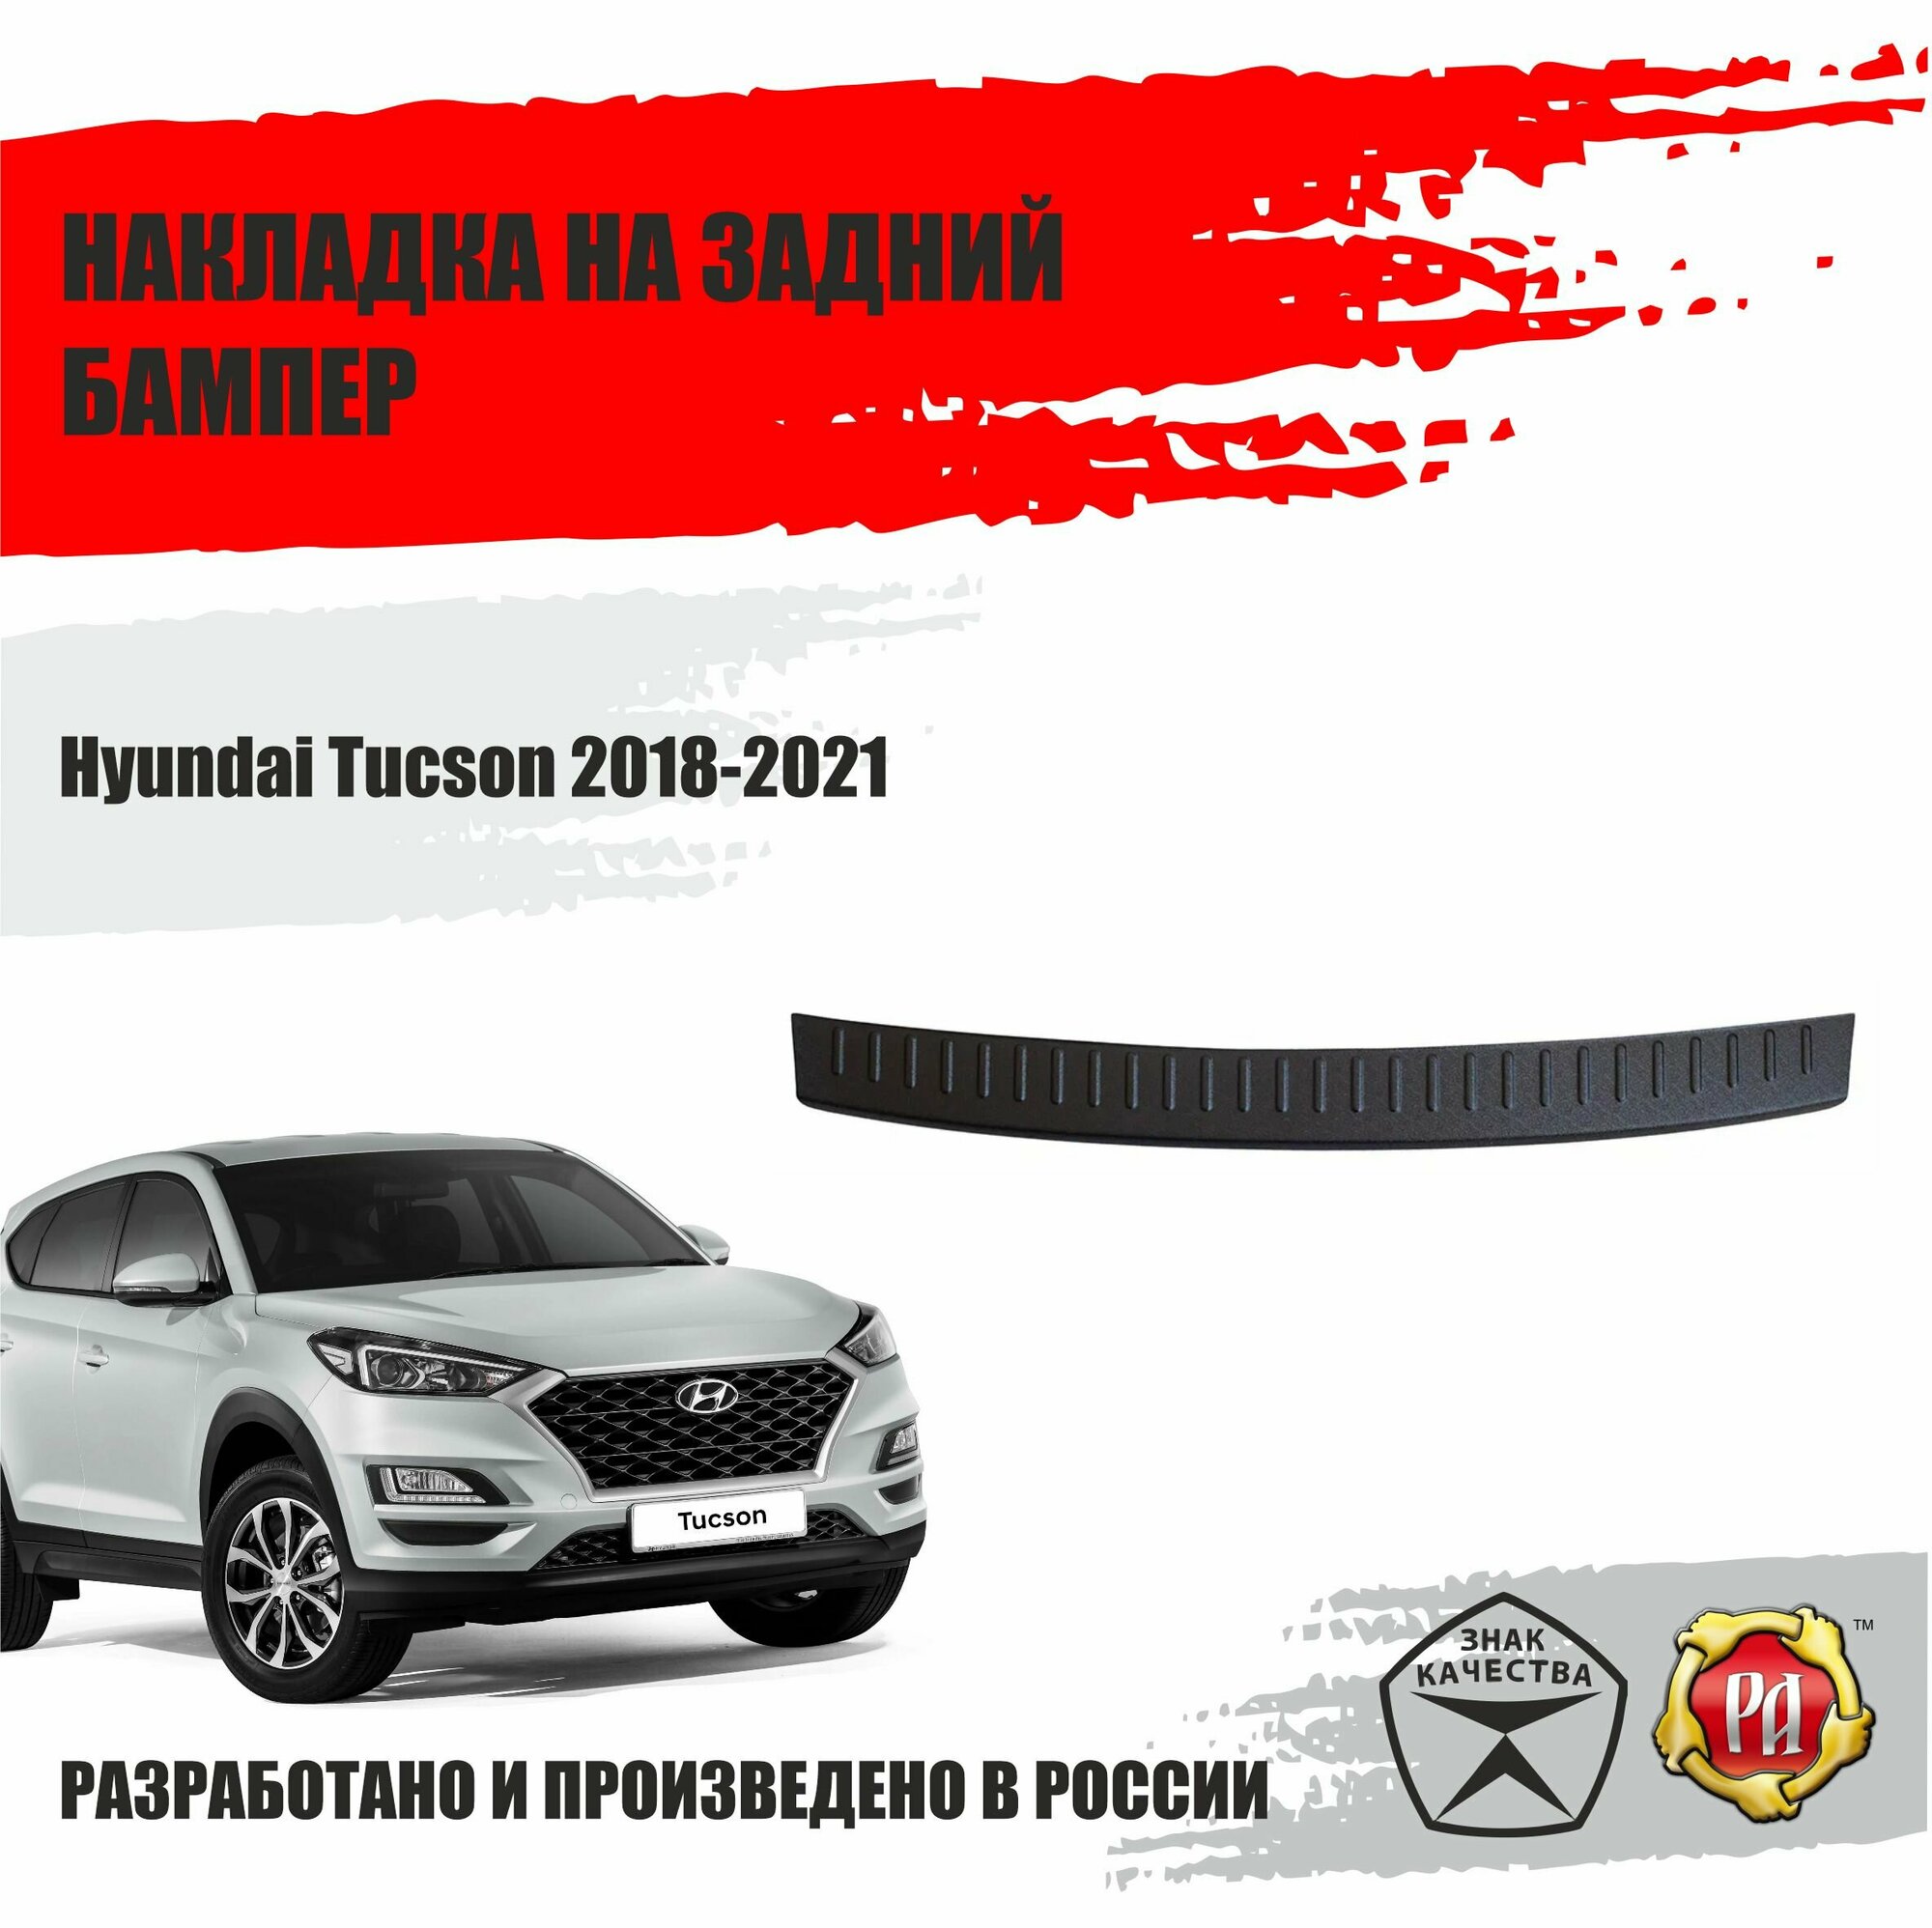 Накладка на задний бампер Русская артель для Hyundai Tucson 2018-2021